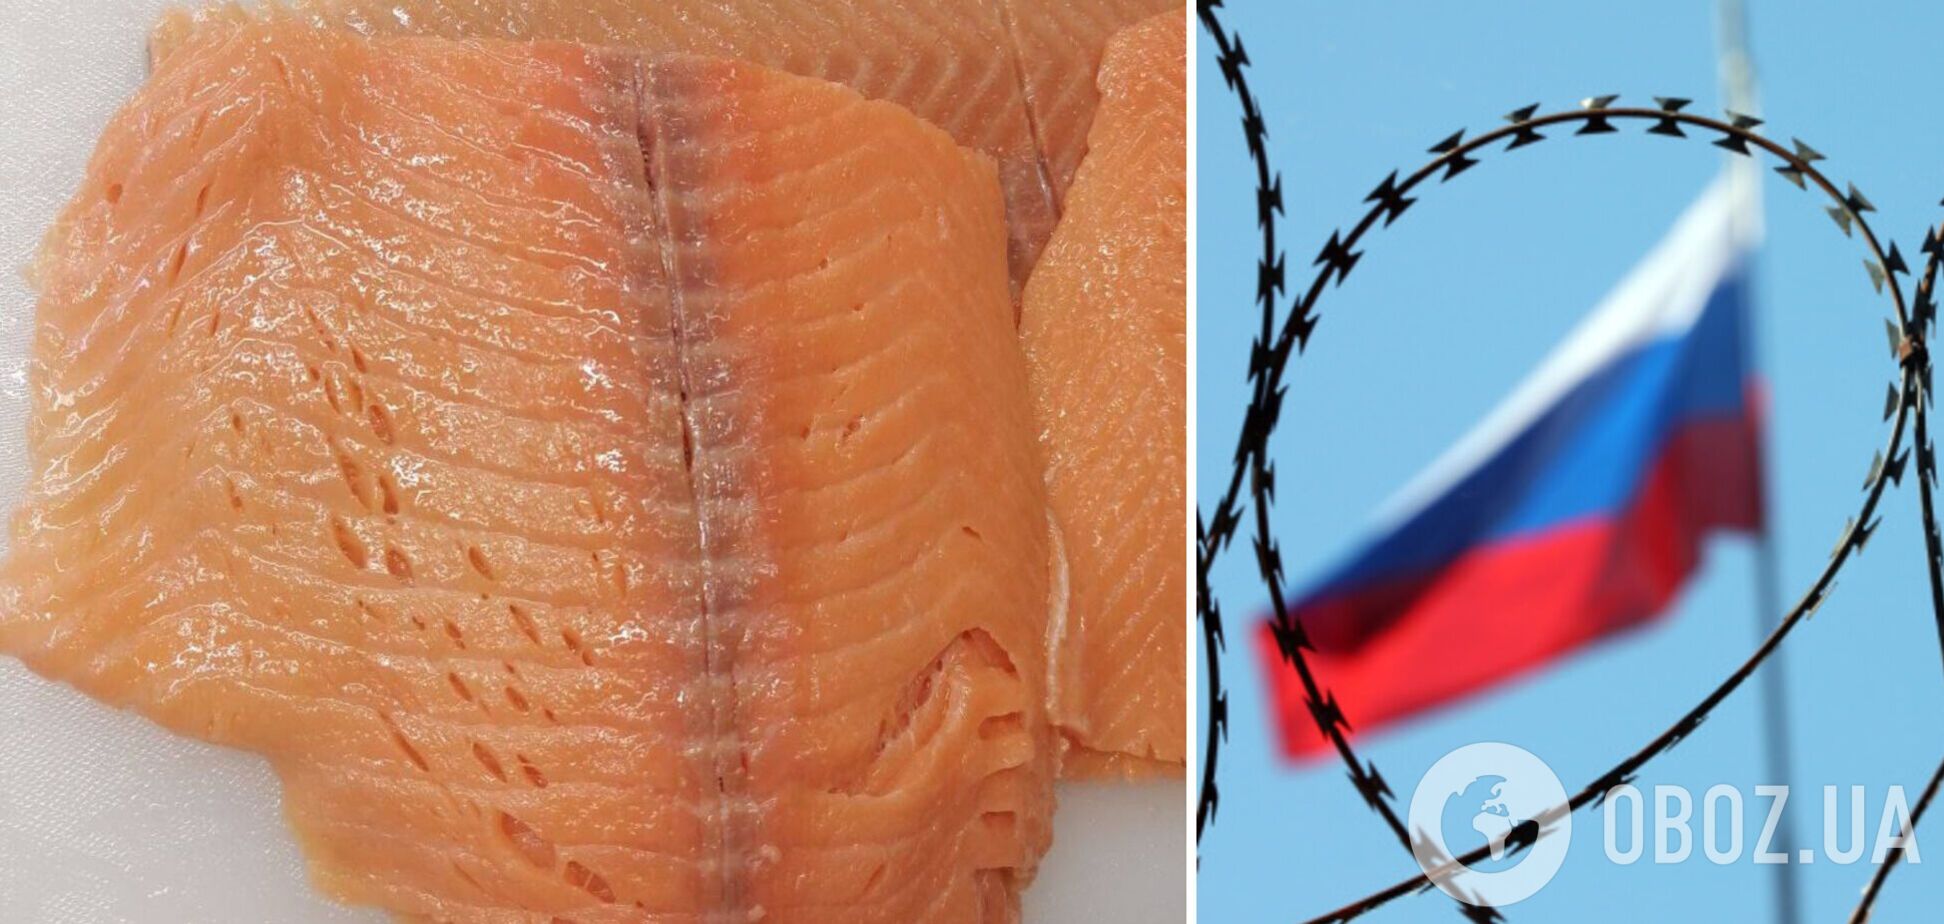 У РФ заклади громадського харчування скоротили закупівлі червоної риби, а в російській знайшли черв'яків та синці